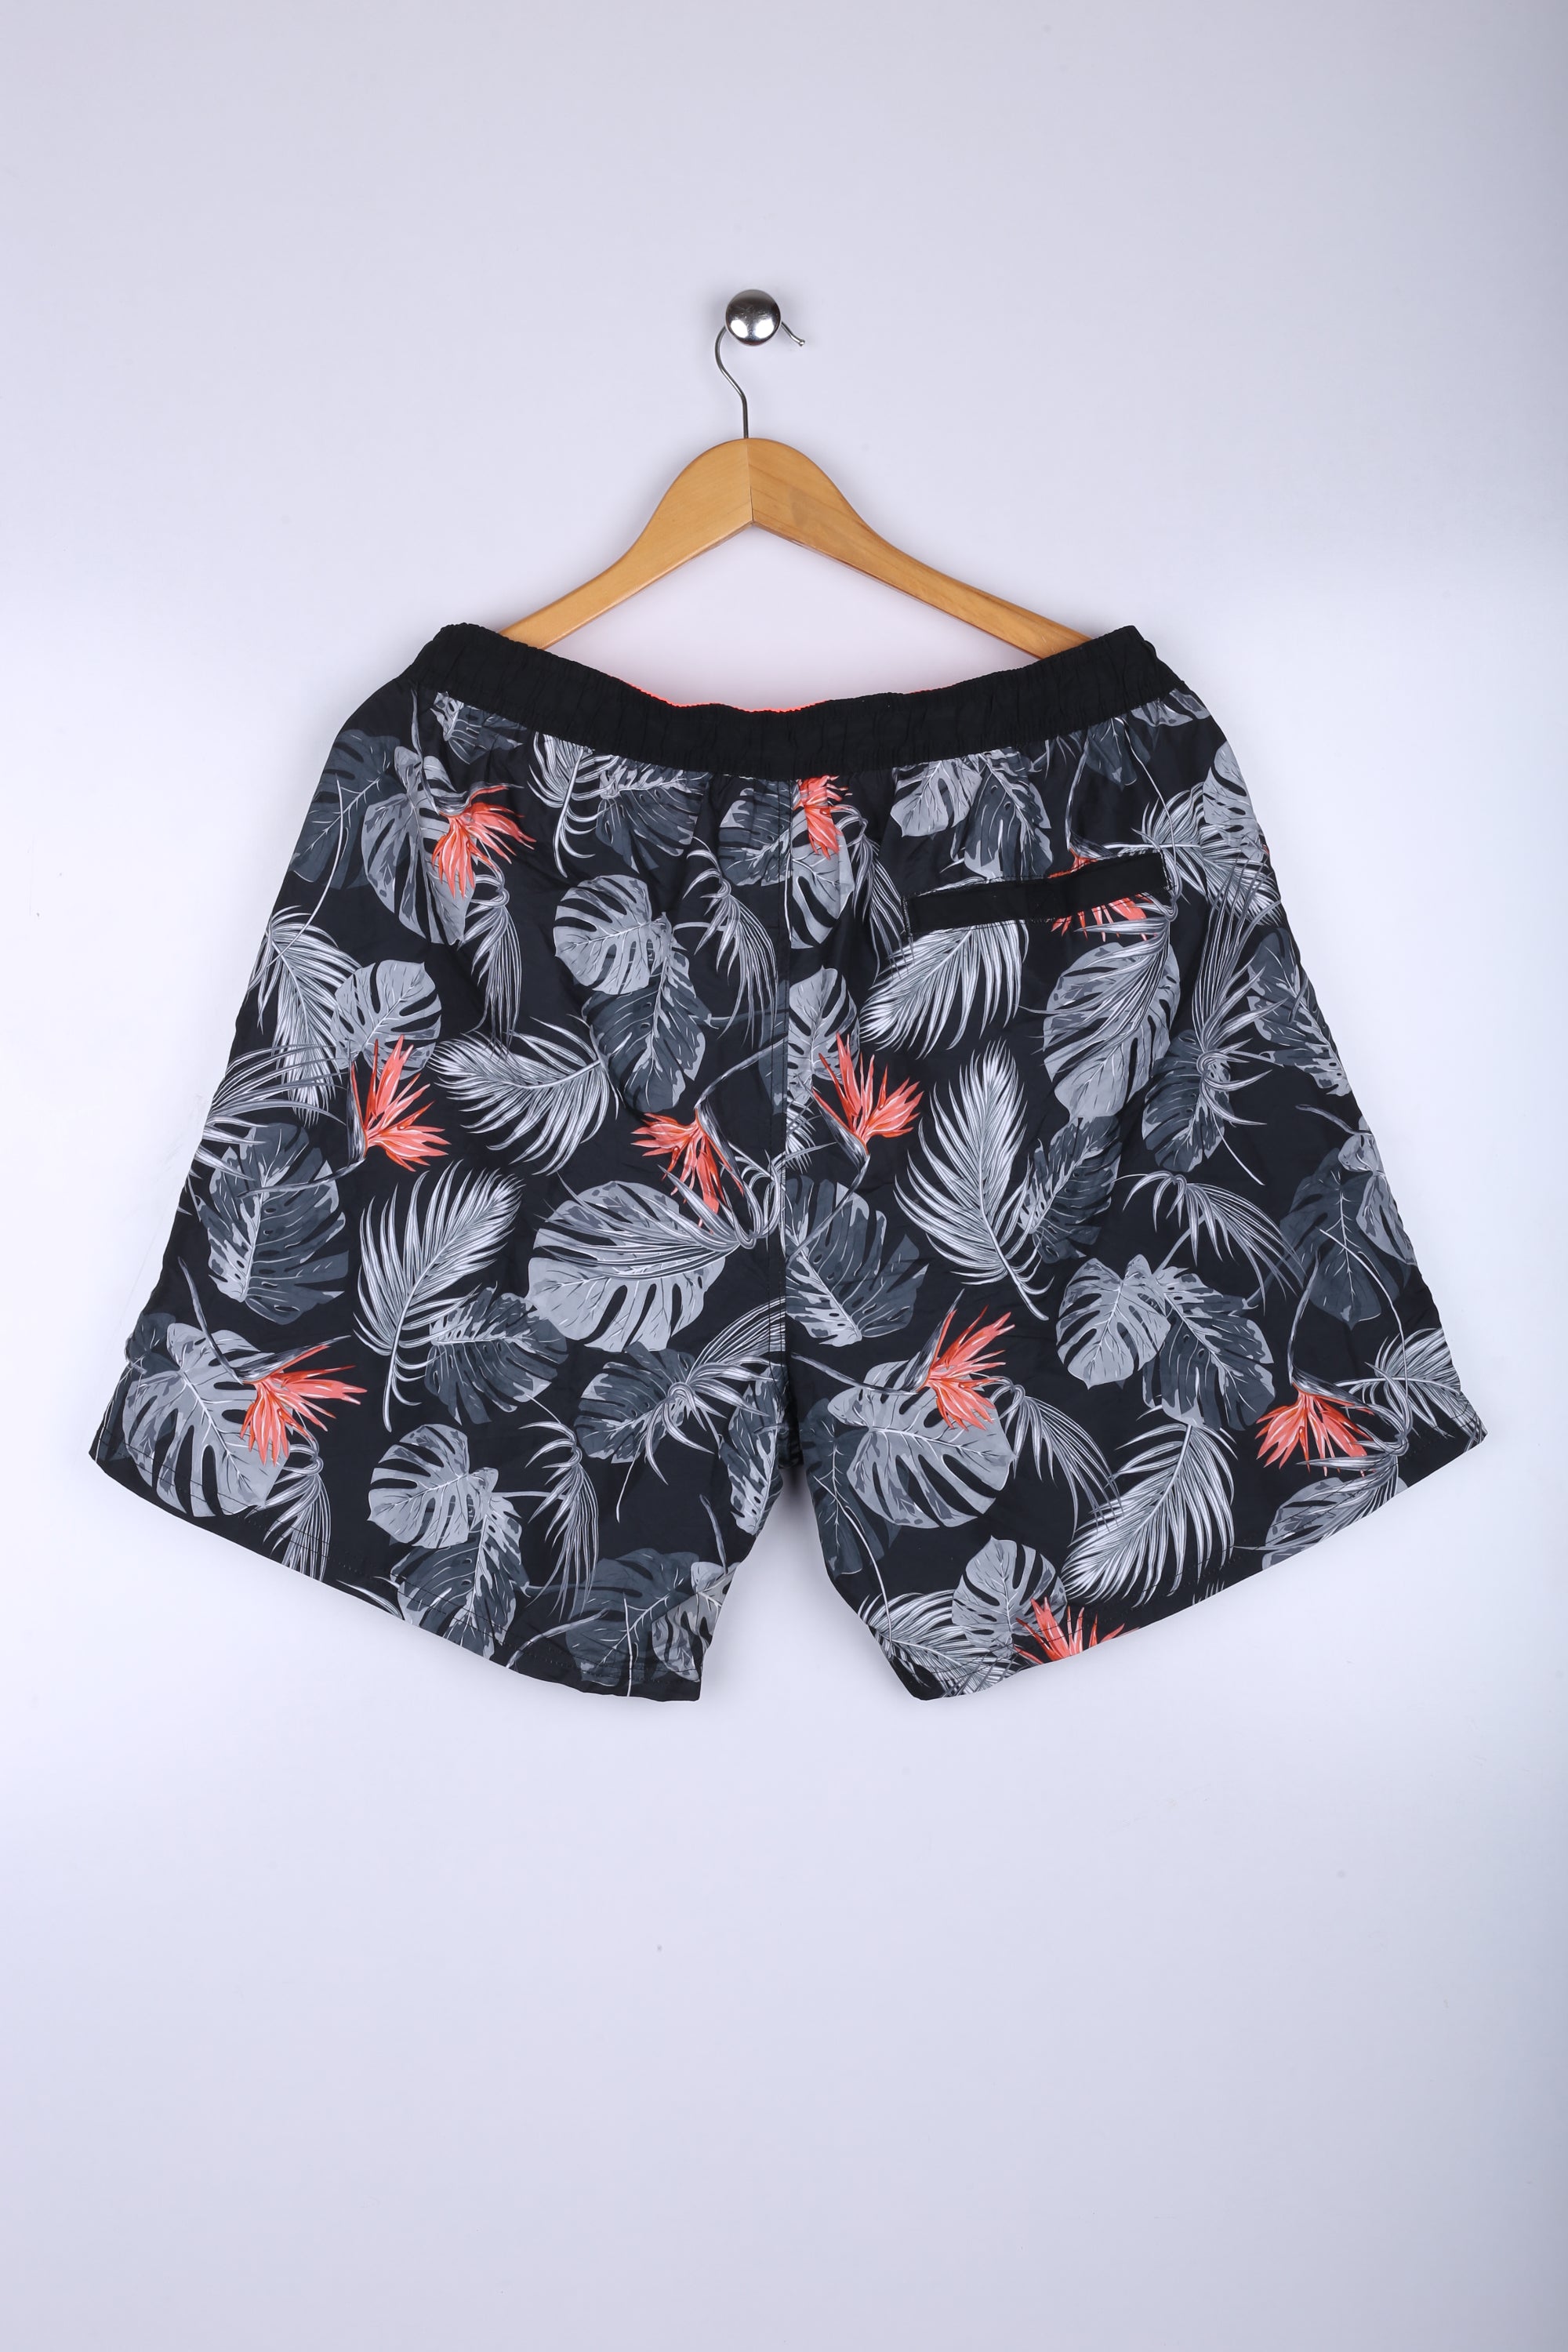 Vintage Hawaiin Shorts Black